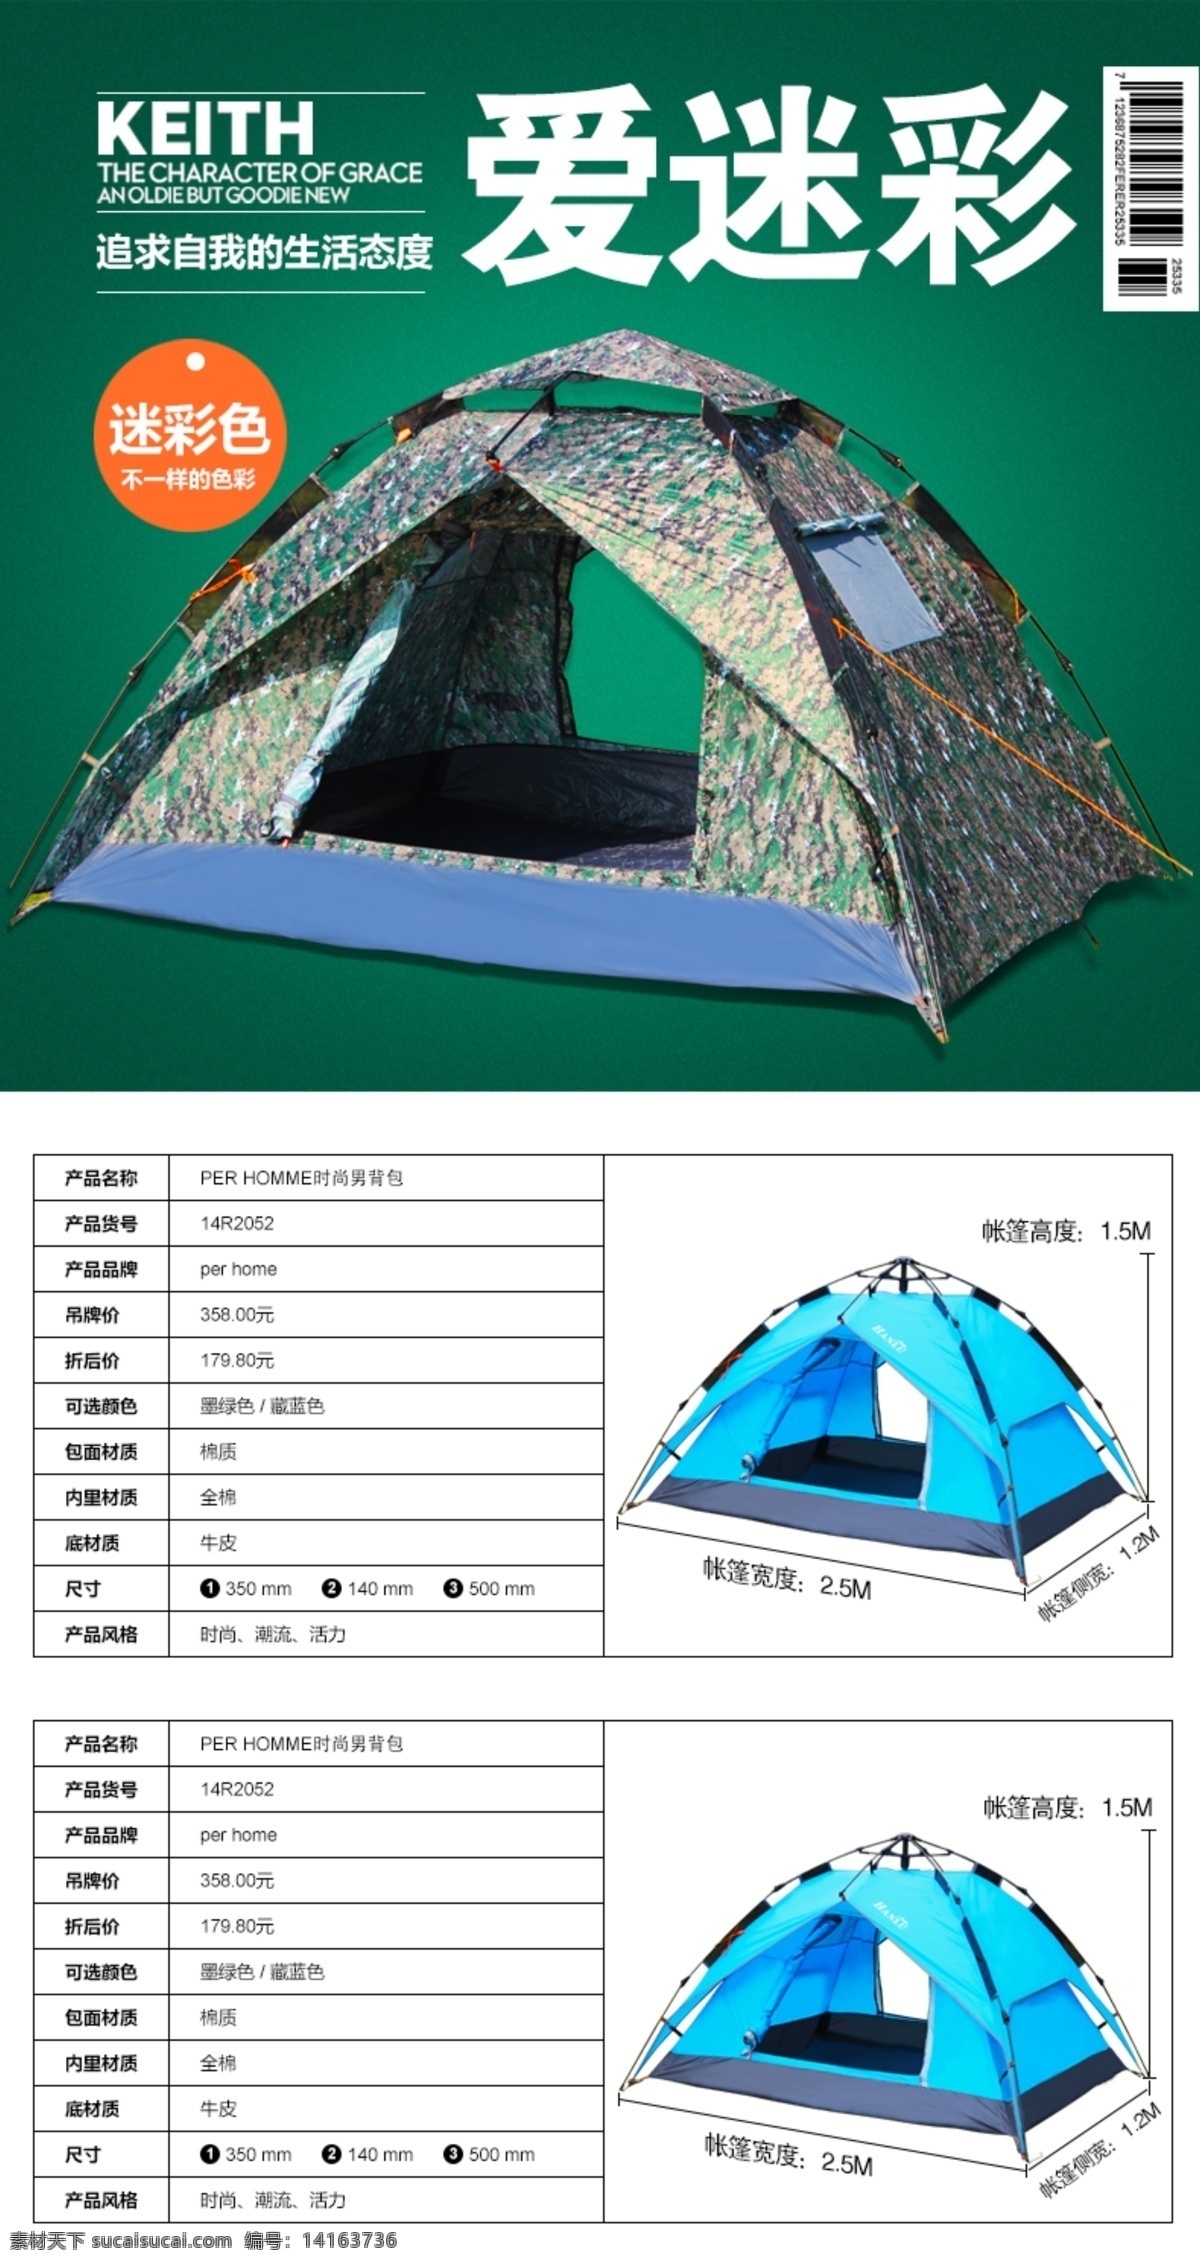 夏季 野营 专用 户外 帐篷 方便 防水 结实 白色